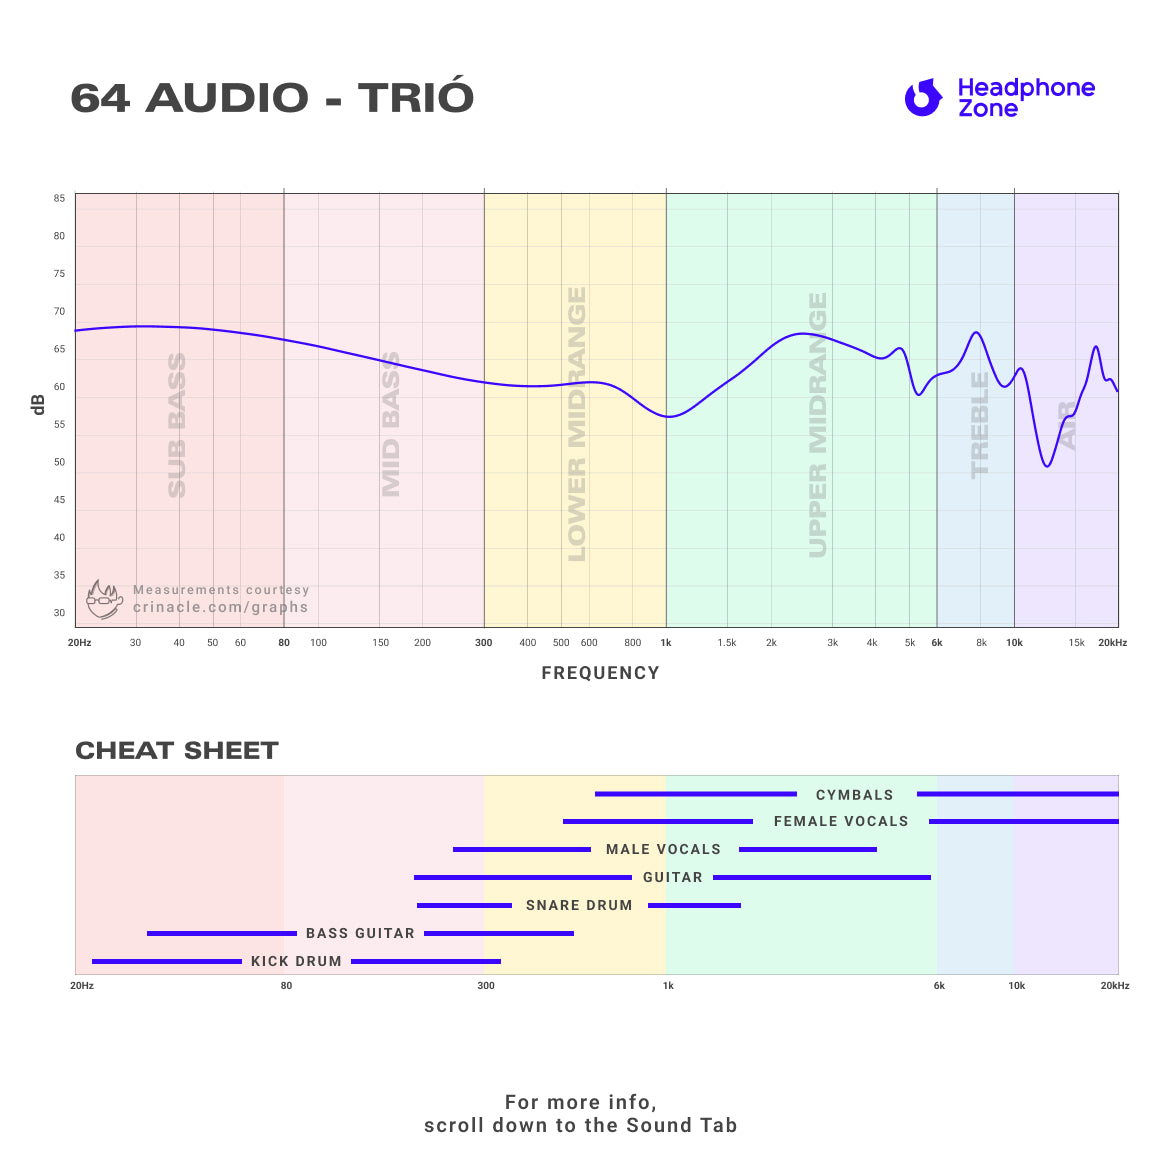 64 Audio - Trio